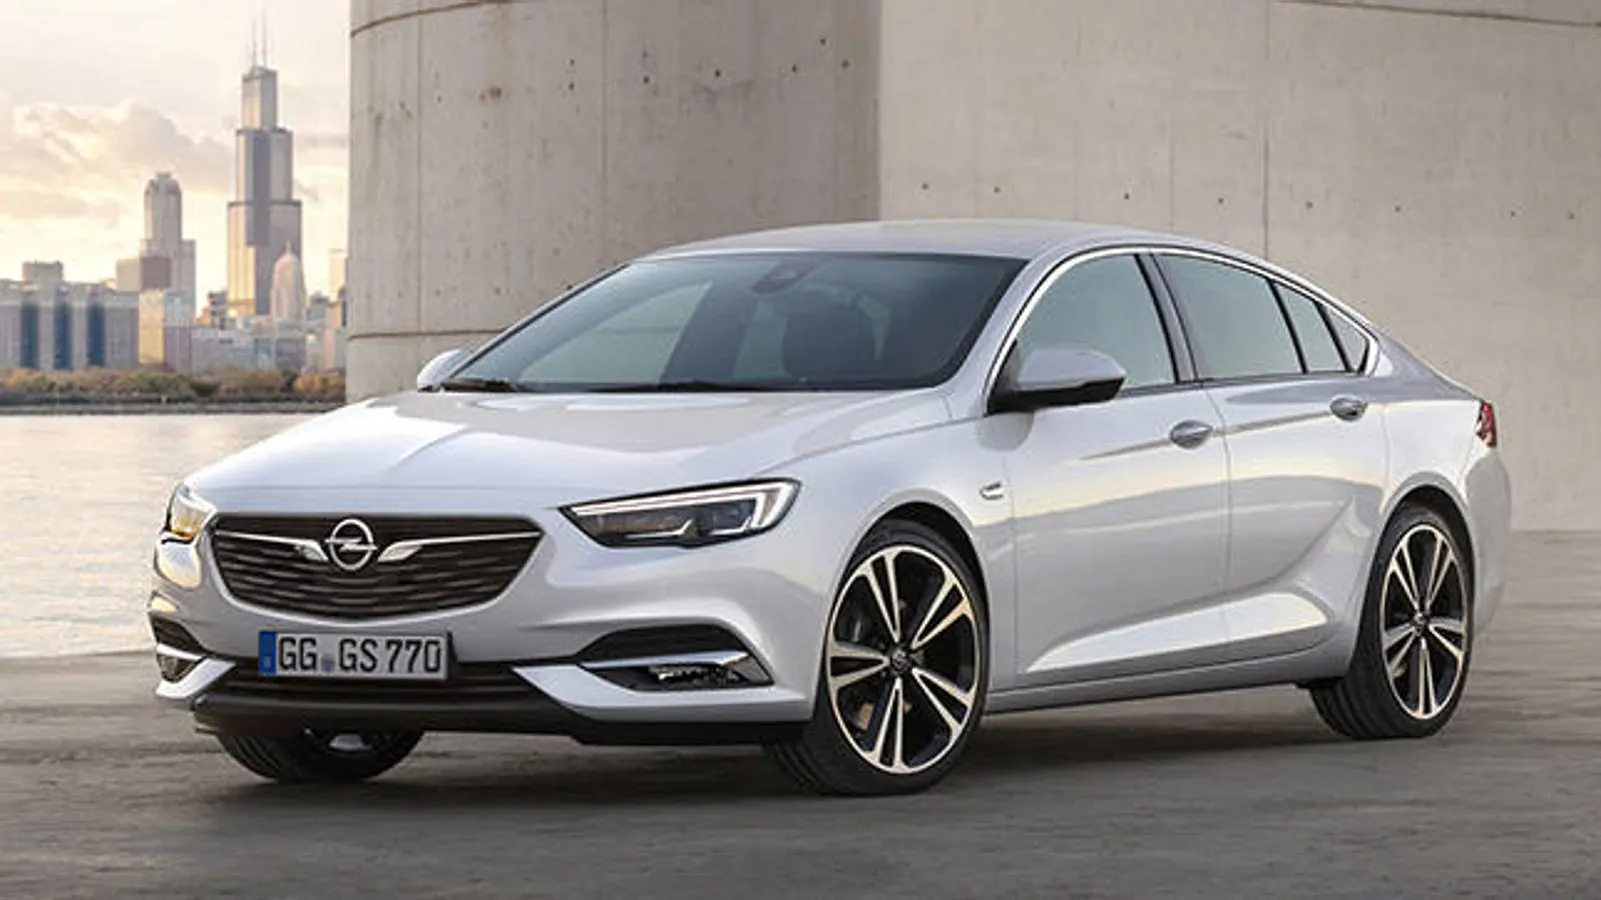 Nuevo Opel Insignia Grand Sport